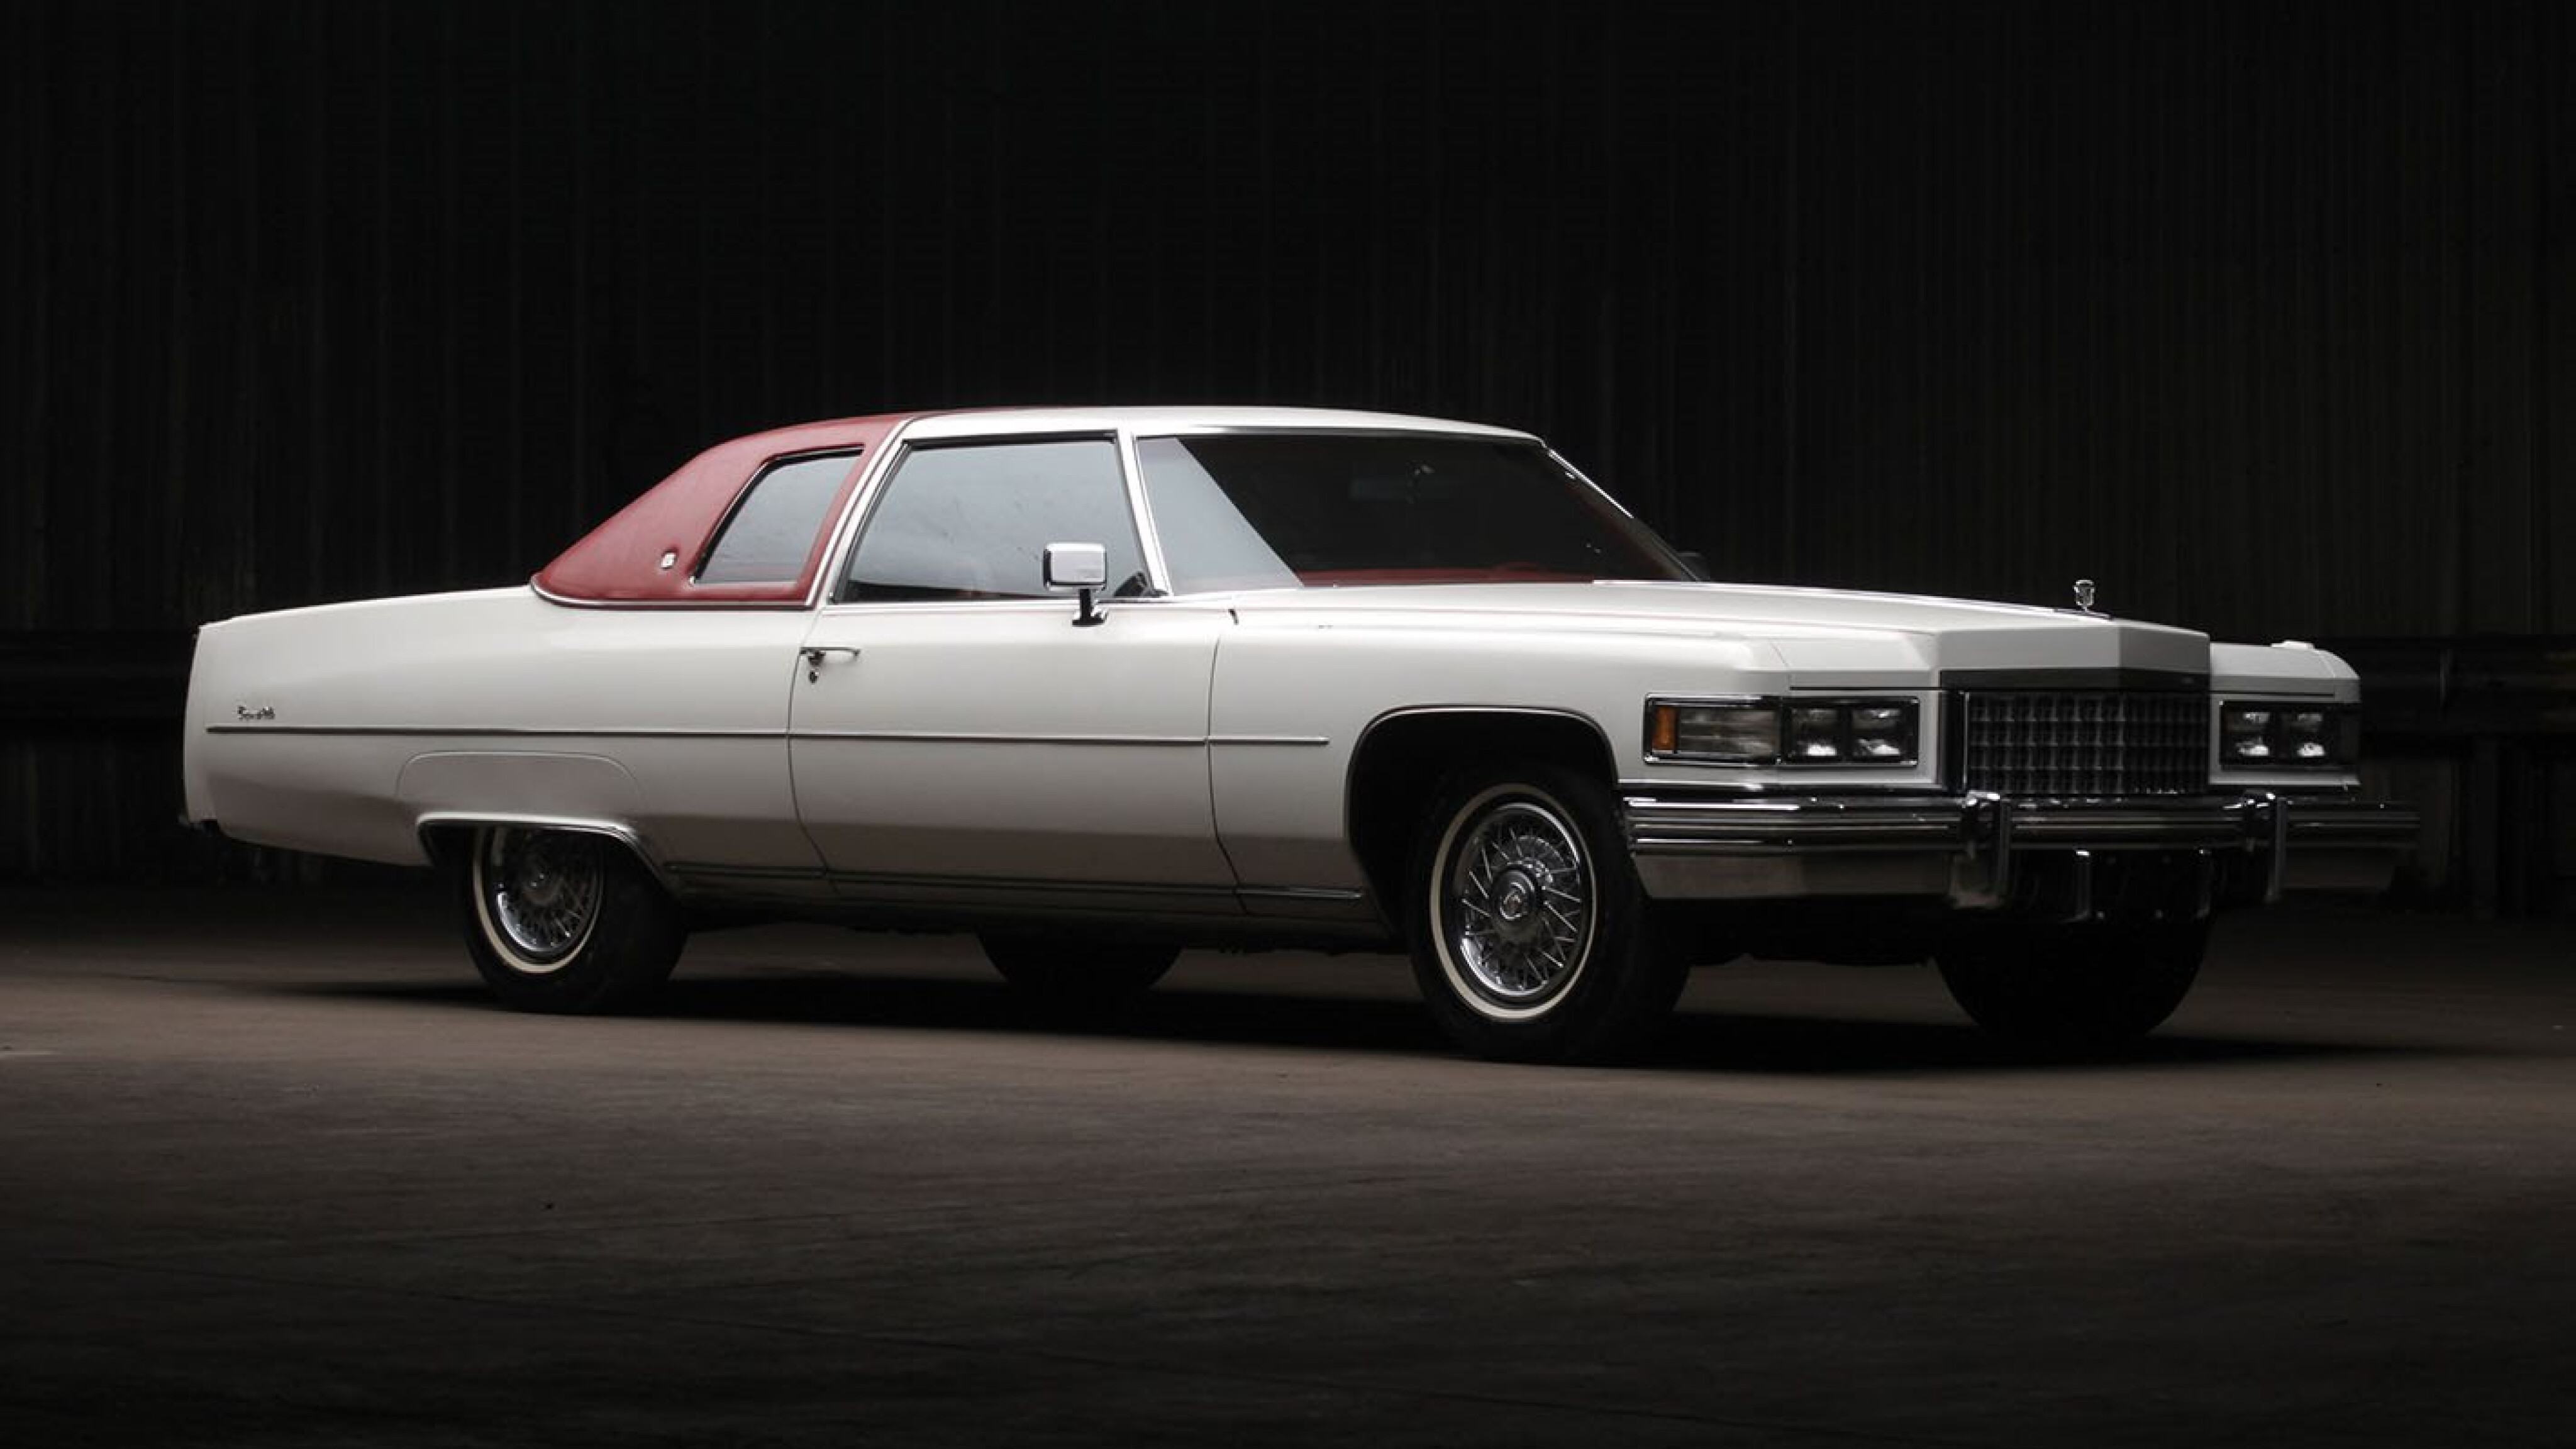 Retro: 1976 Cadillac Coupe deVille